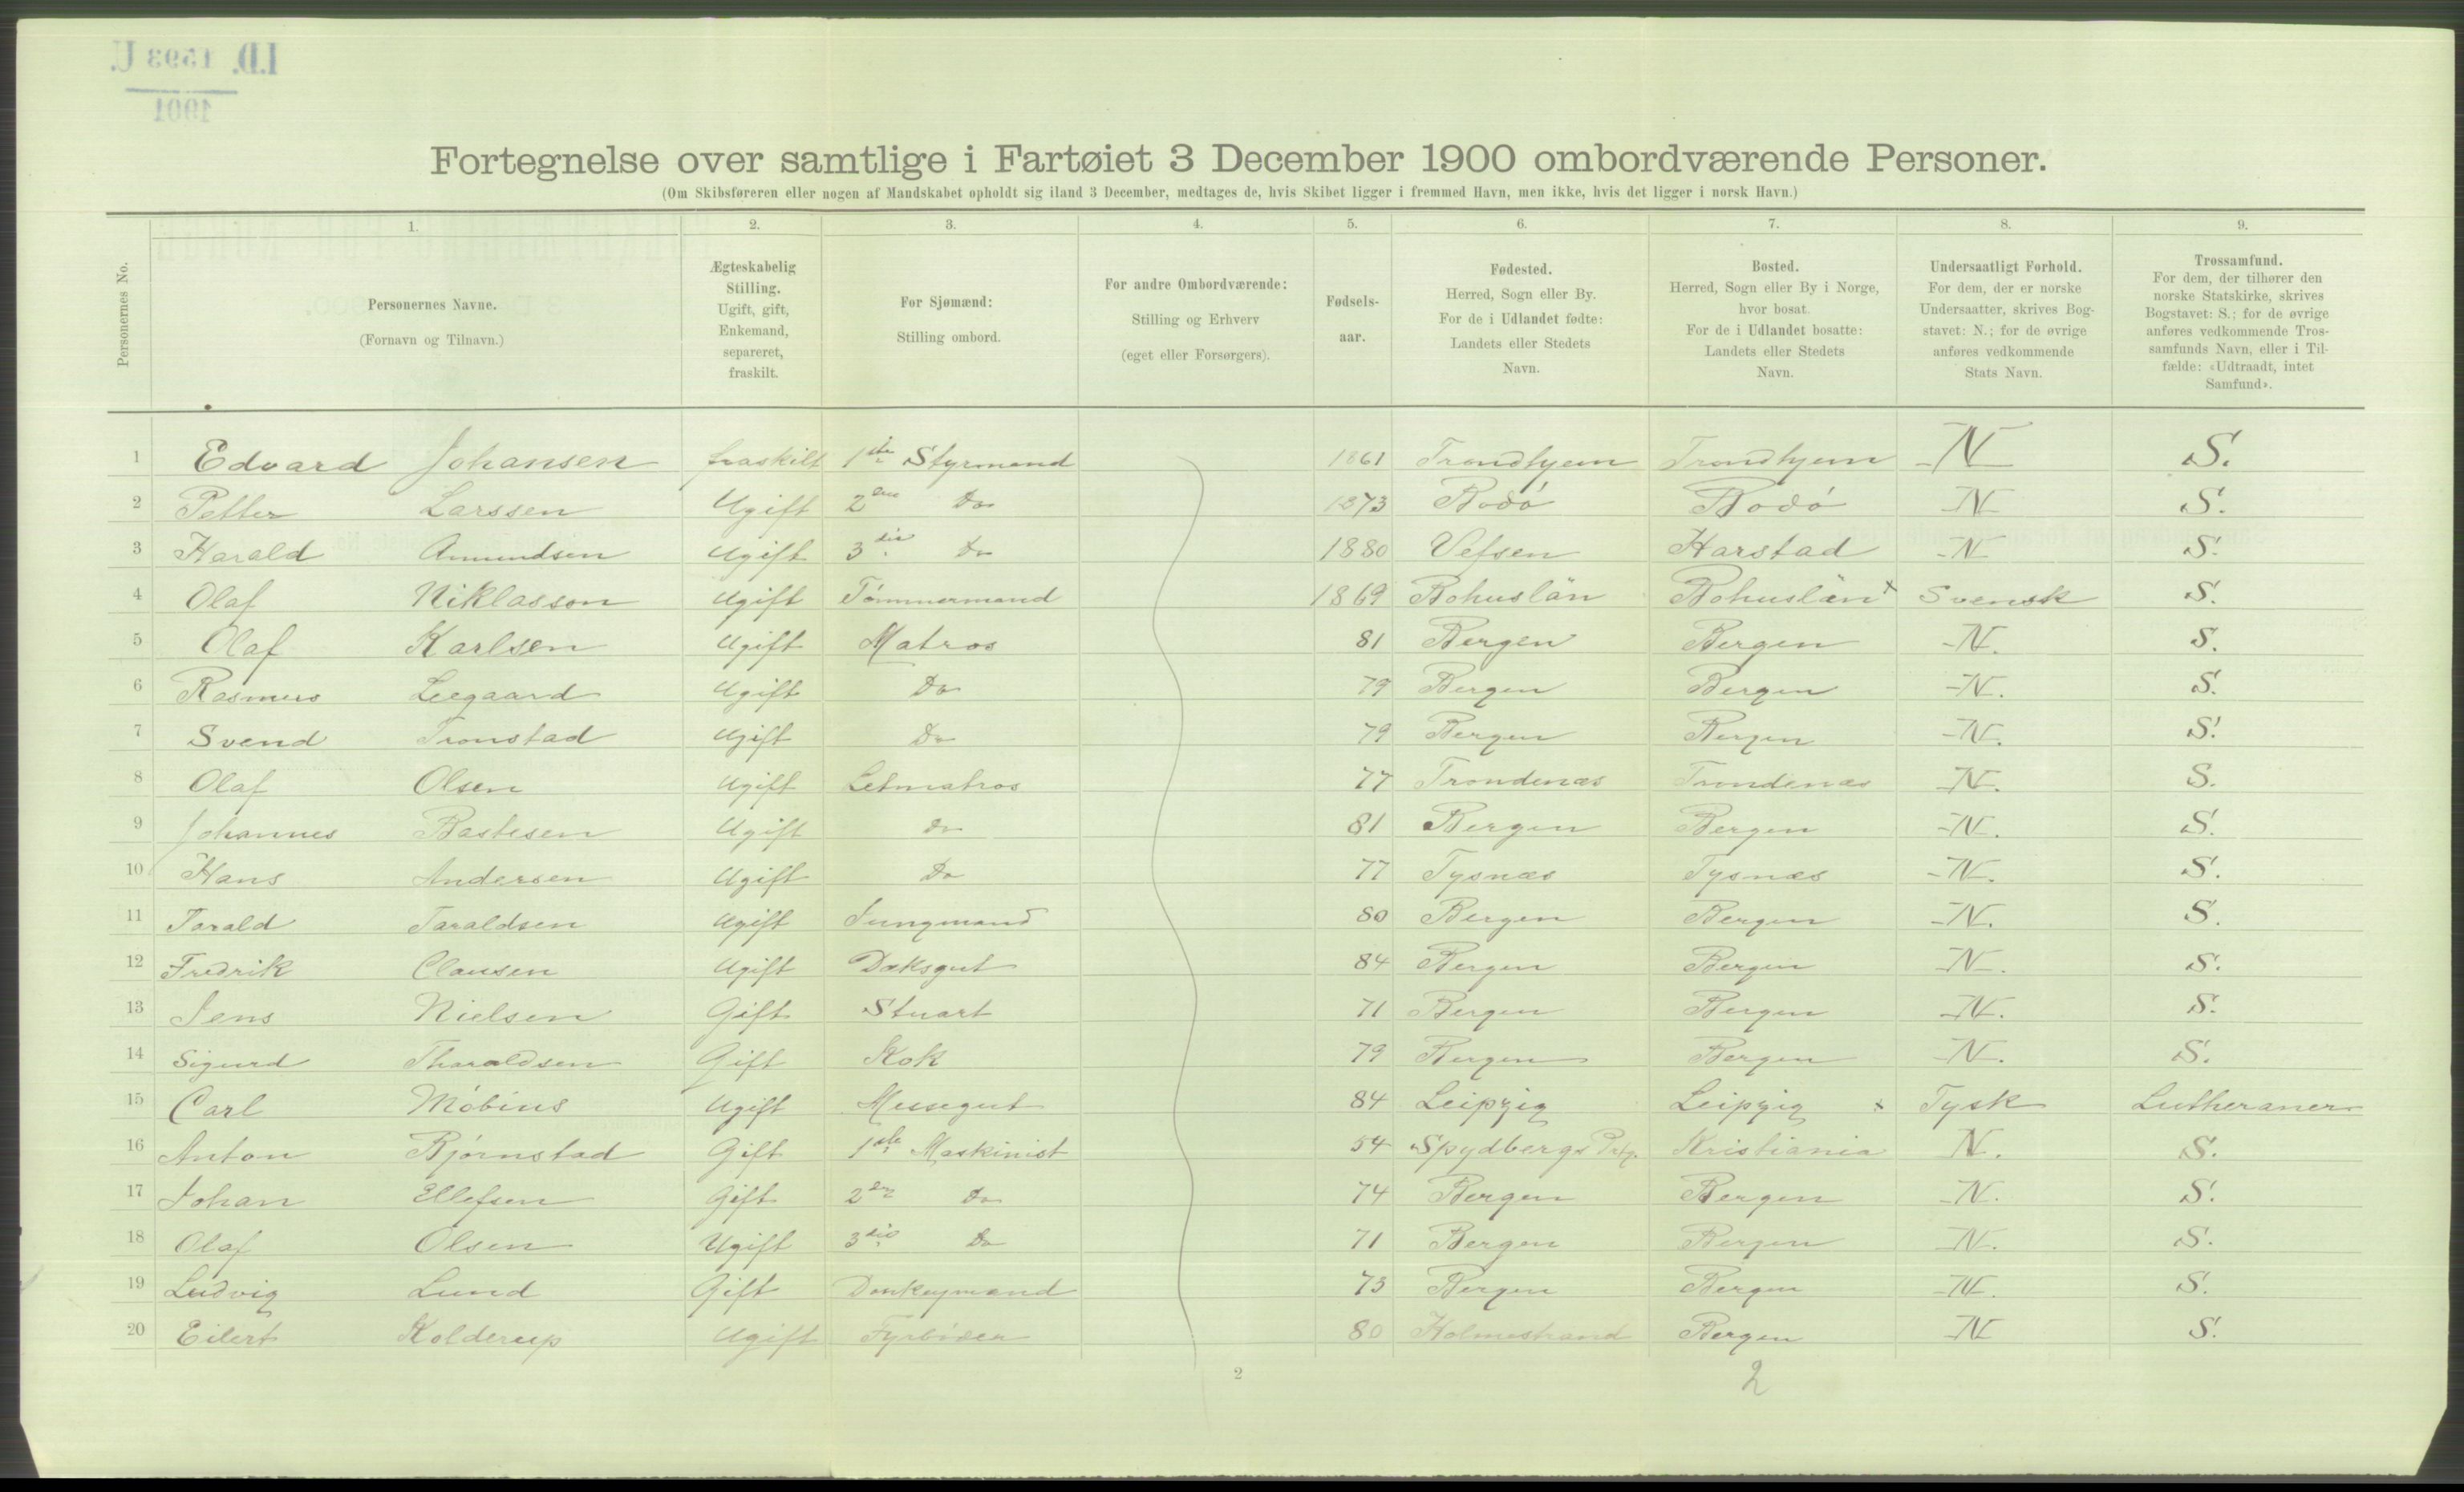 RA, Folketelling 1900 - skipslister med personlister for skip i norske havner, utenlandske havner og til havs, 1900, s. 5638